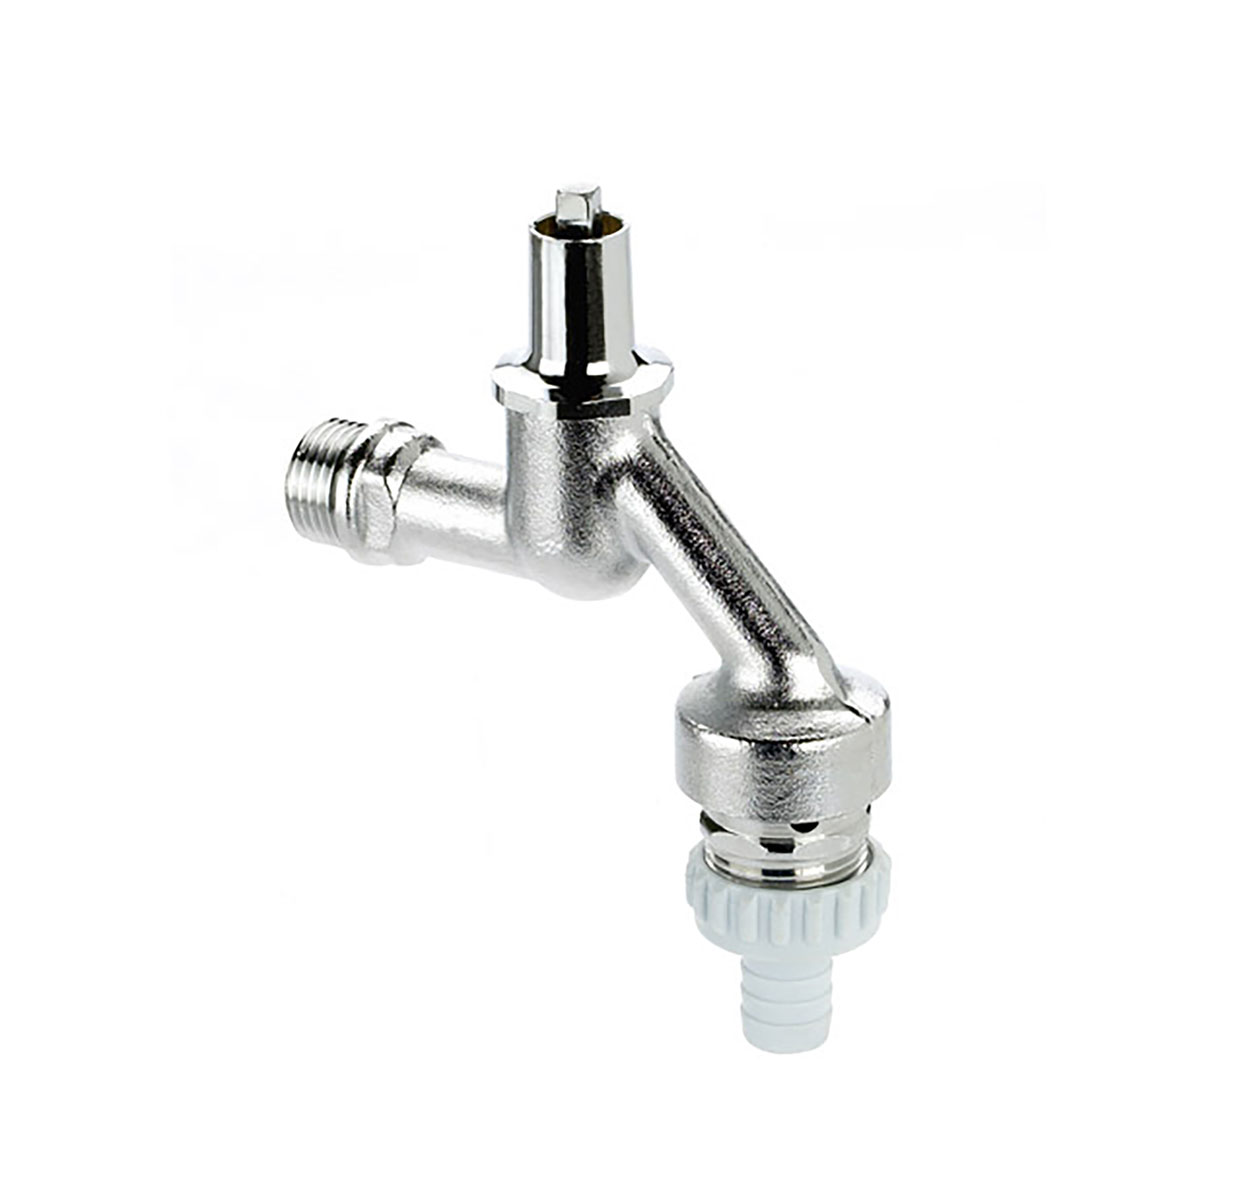 1106151 - Brass draw-off tap socket key upper-part